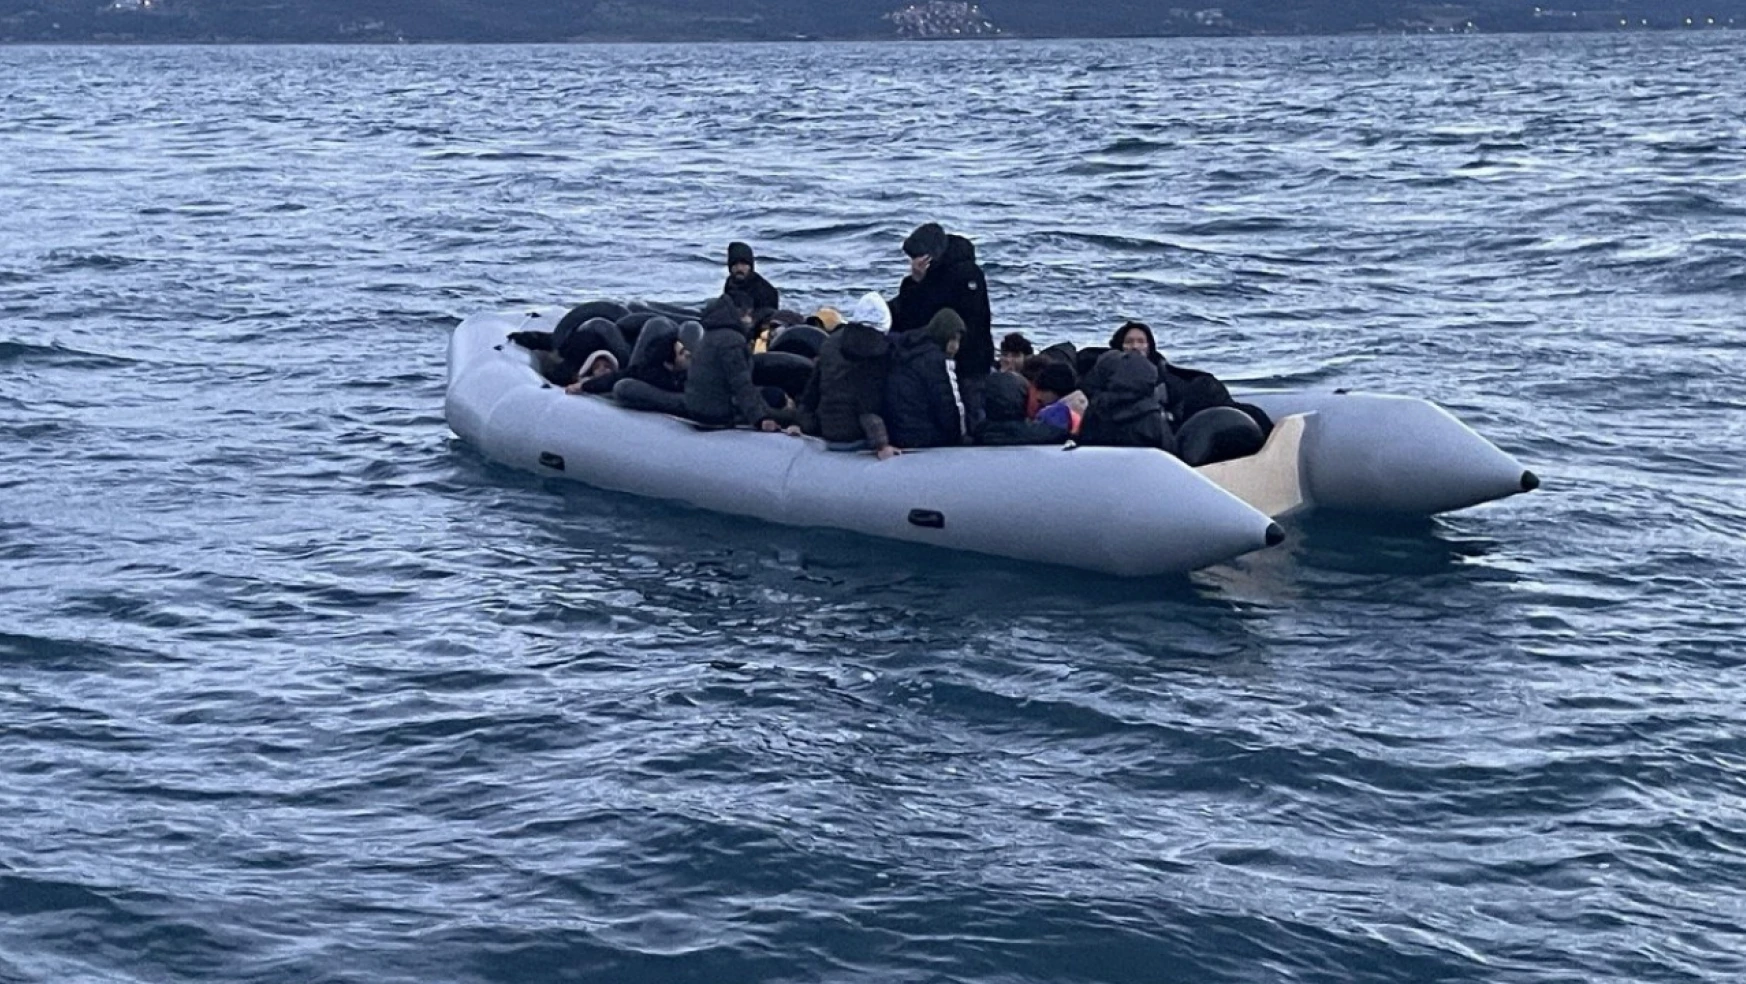 Yunan unsurlarınca ölüme terk edilen 37 kaçak göçmen kurtarıldı